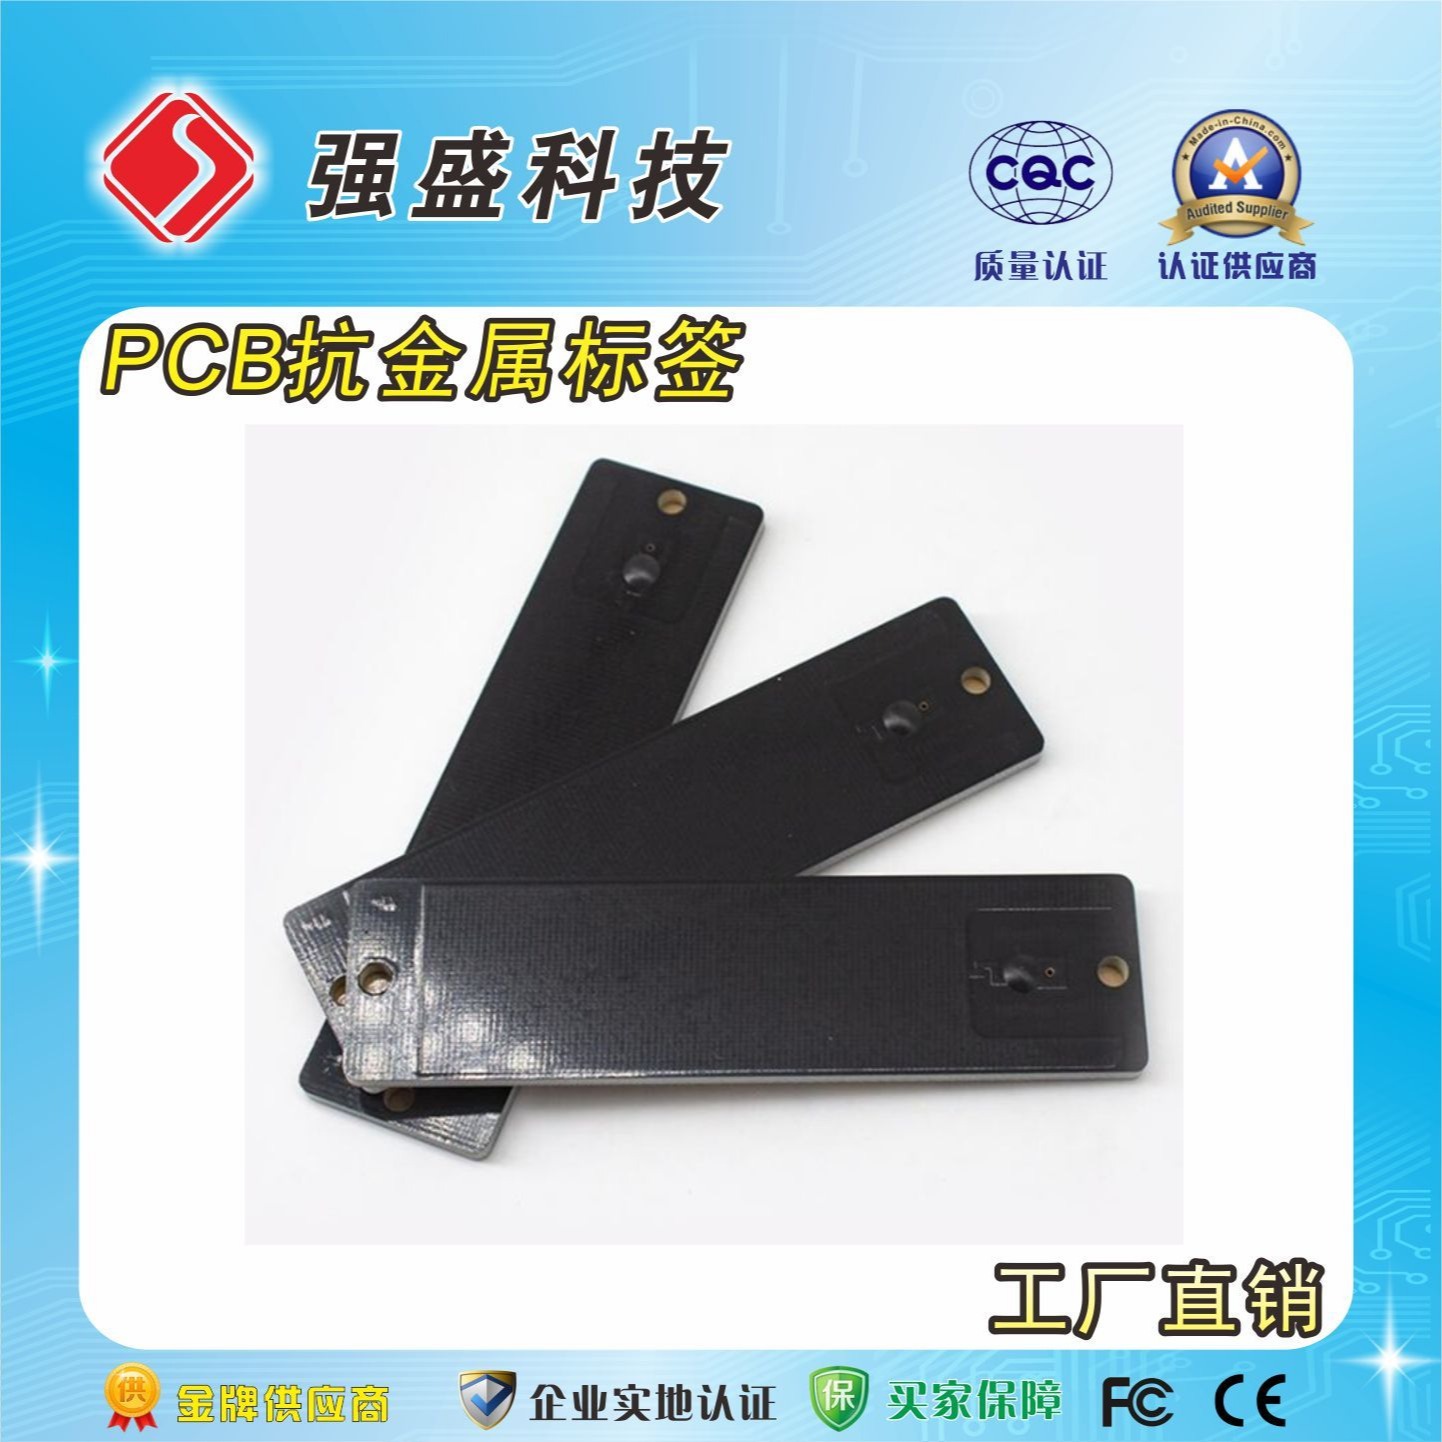 超高频PCB抗金属标签 QS-TU302 抗金属耐高温标签 资产设备管理